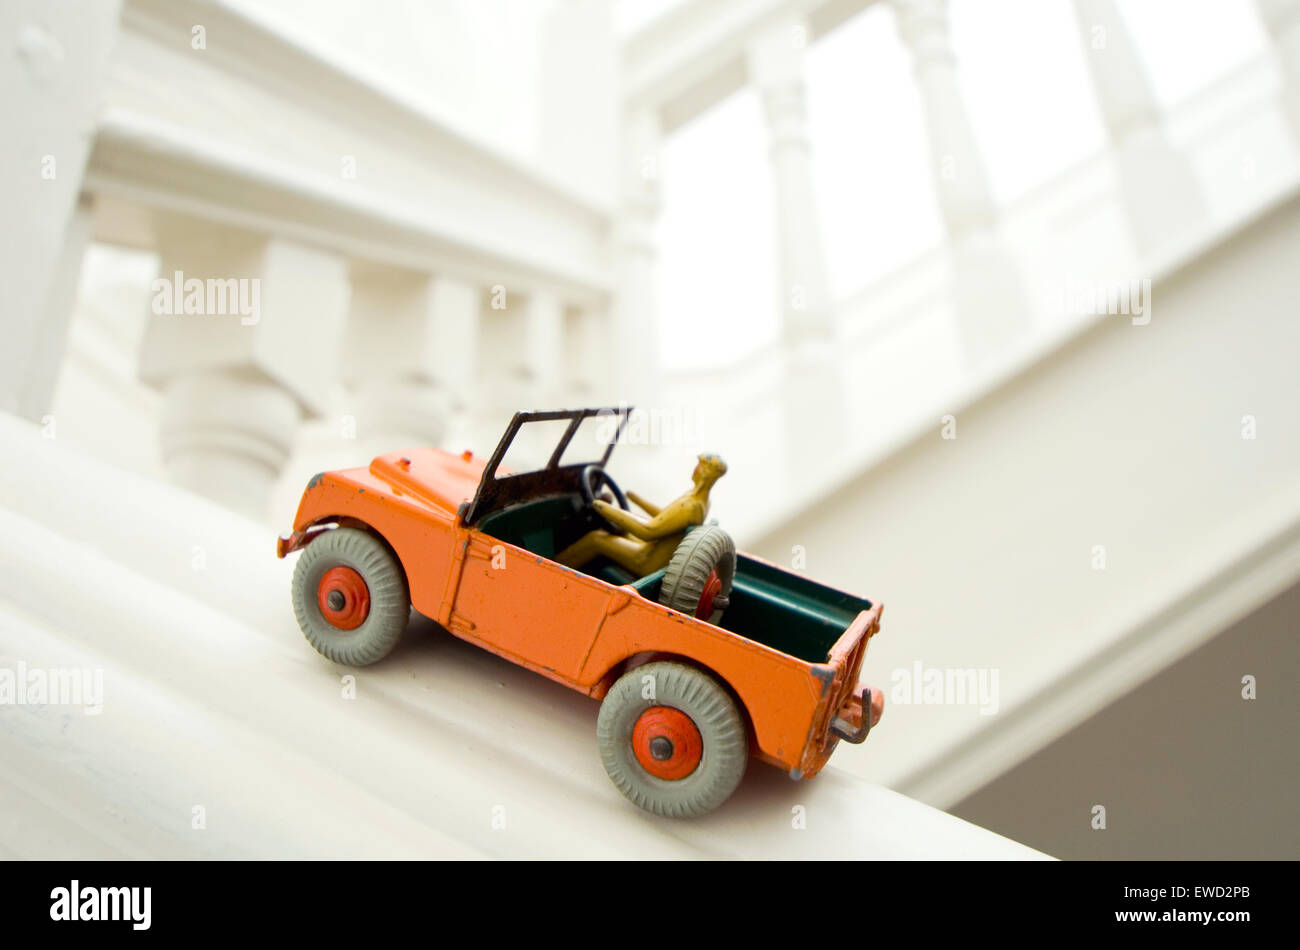 Modèle de voiture Dinky Land Rover des années 1950 qui peut aller n'importe où, y compris à l'étage Banque D'Images